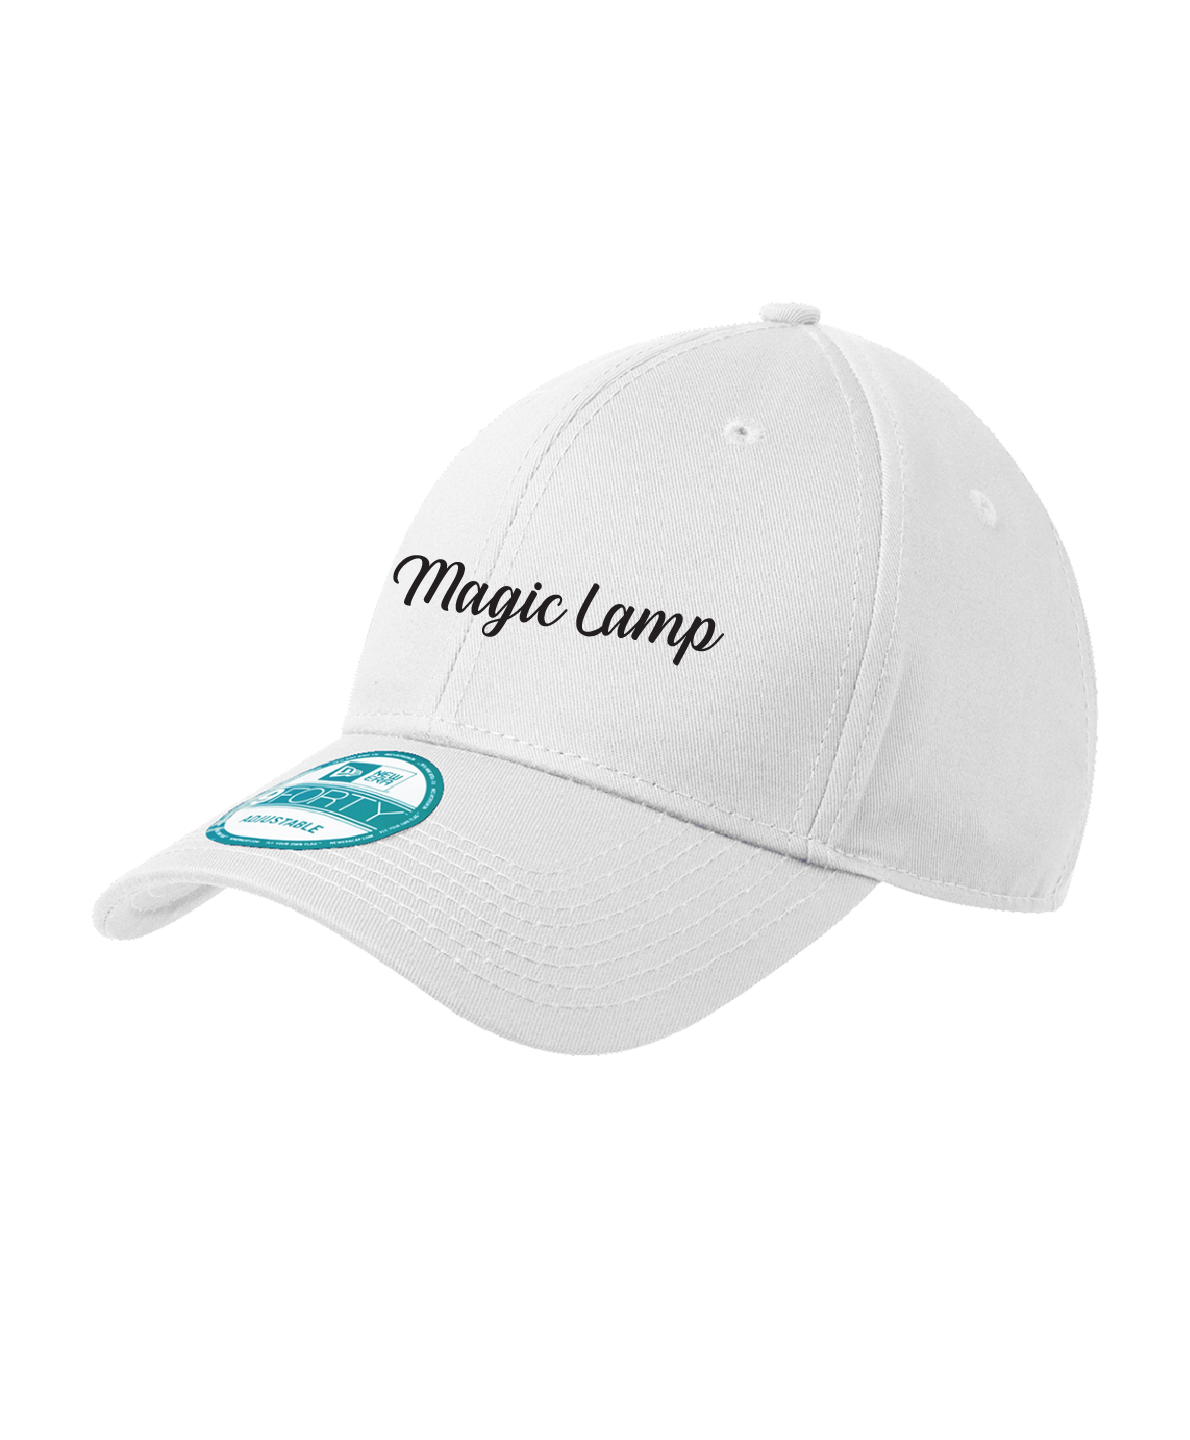 Magic Lamp - New Era® - Adjustable Structured Cap